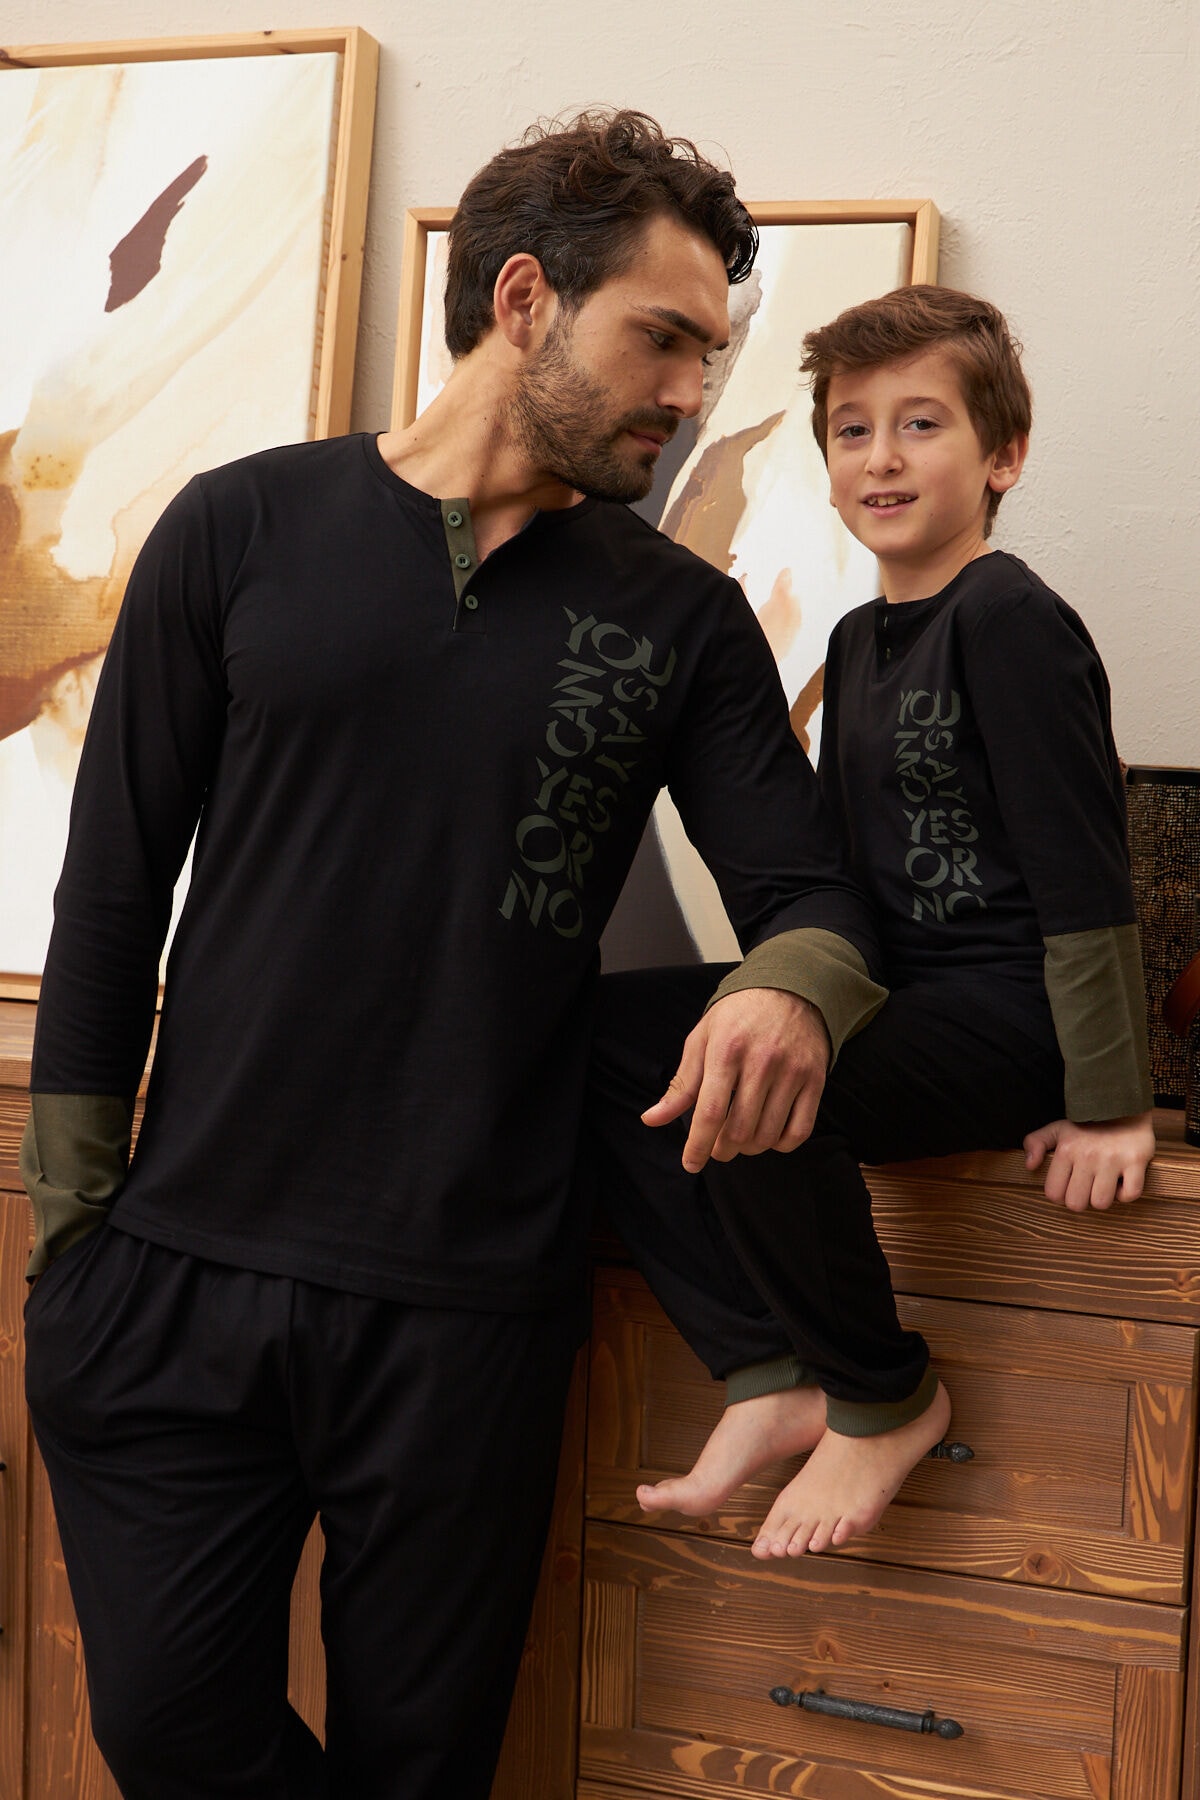 LILIAN Yes & No Pijama Takımı Baba Oğul Ayrı Ayrı Satılır Fıyatları Farklıdır